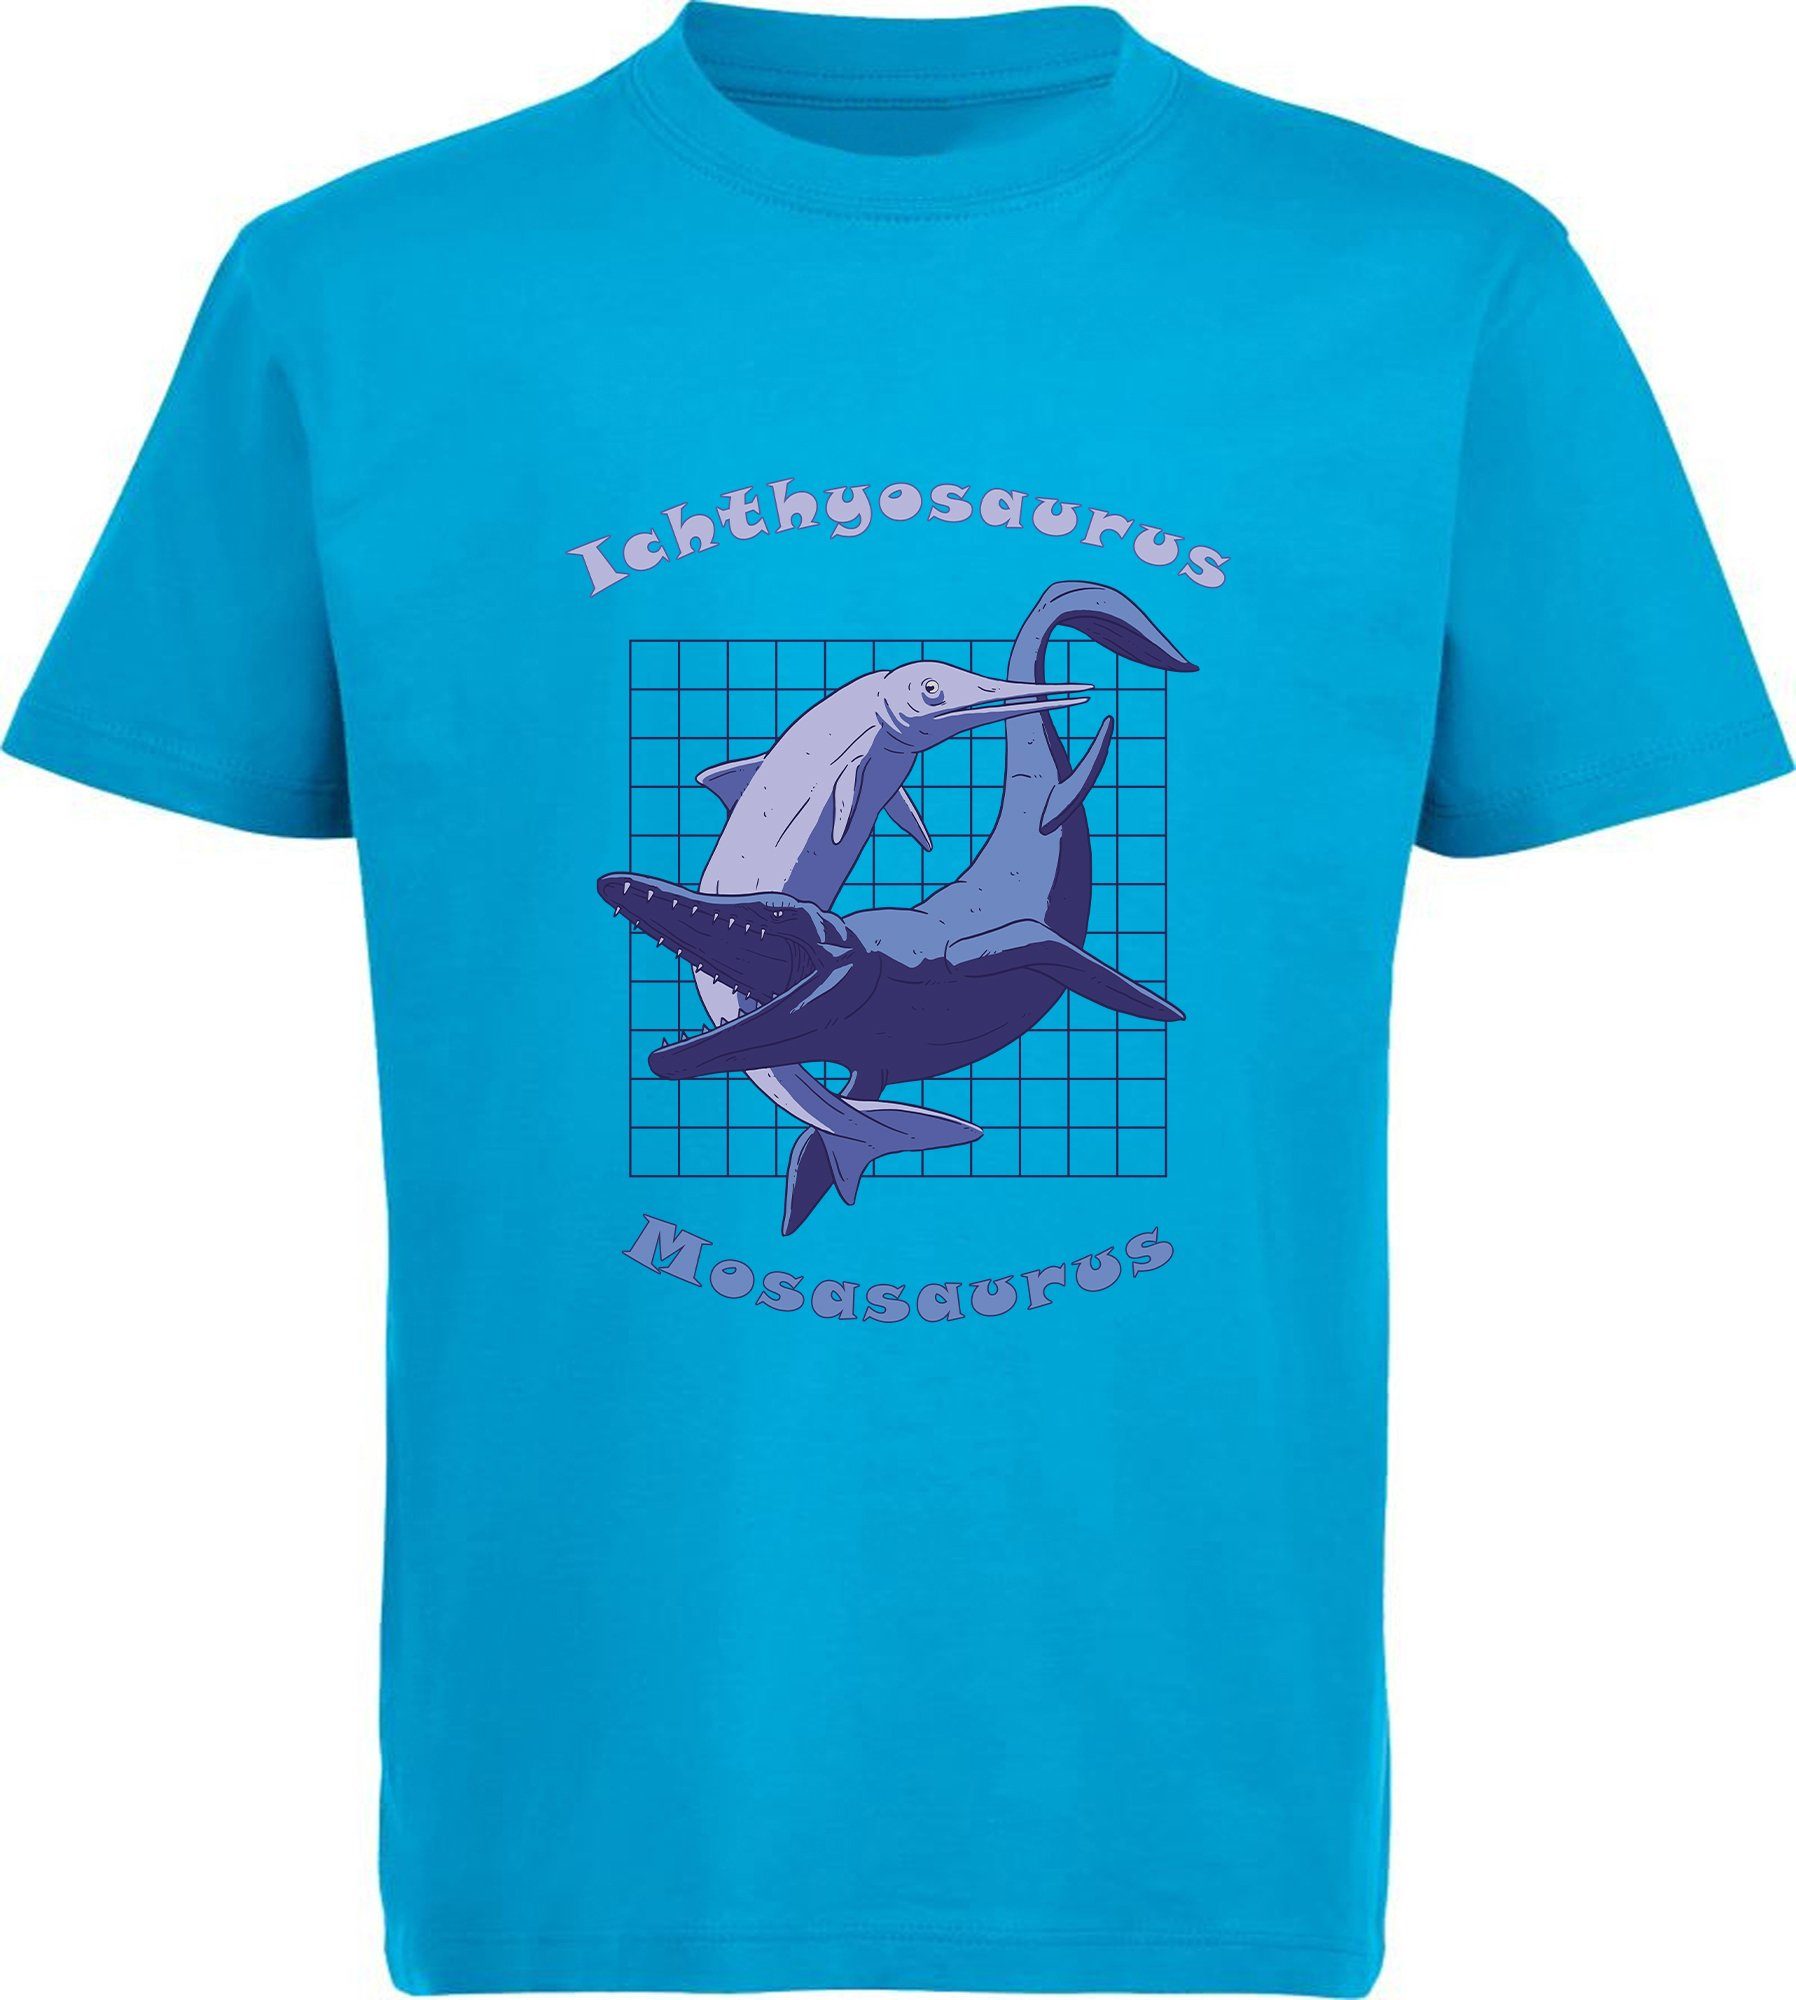 MyDesign24 Print-Shirt bedrucktes Kinder T-Shirt mit Ichthyosaurus und Mosasaurus Baumwollshirt mit Dino, schwarz, weiß, rot, blau, i89 aqua blau